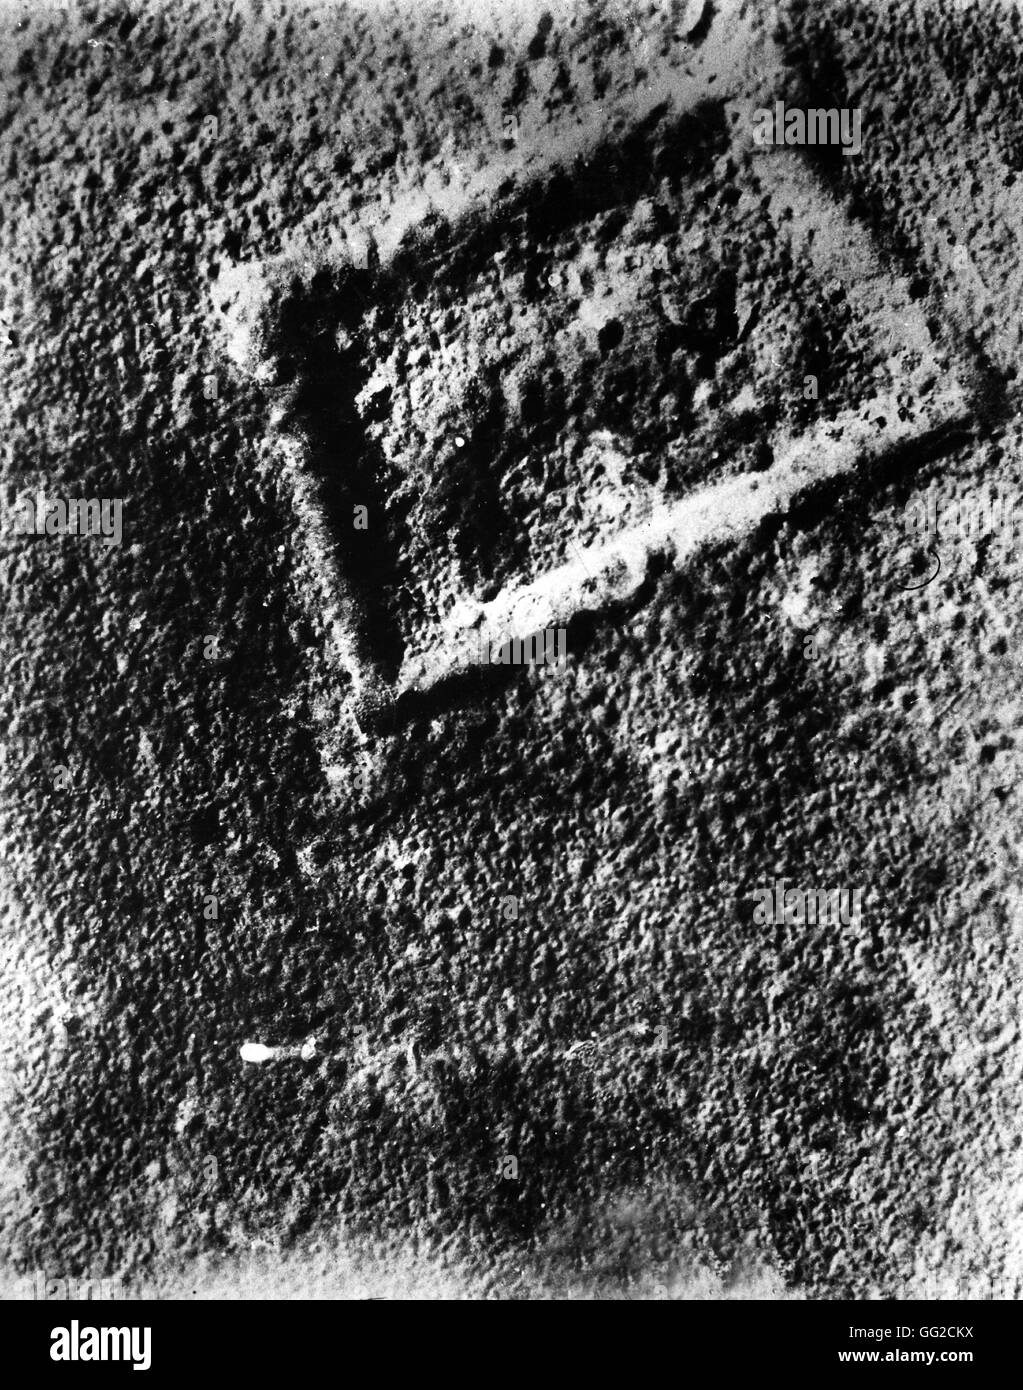 Vue aérienne : ruines de la zone autour du fort de Vaux après l'explosif le 25 novembre 1916 Vincennes, Musée de la guerre Banque D'Images